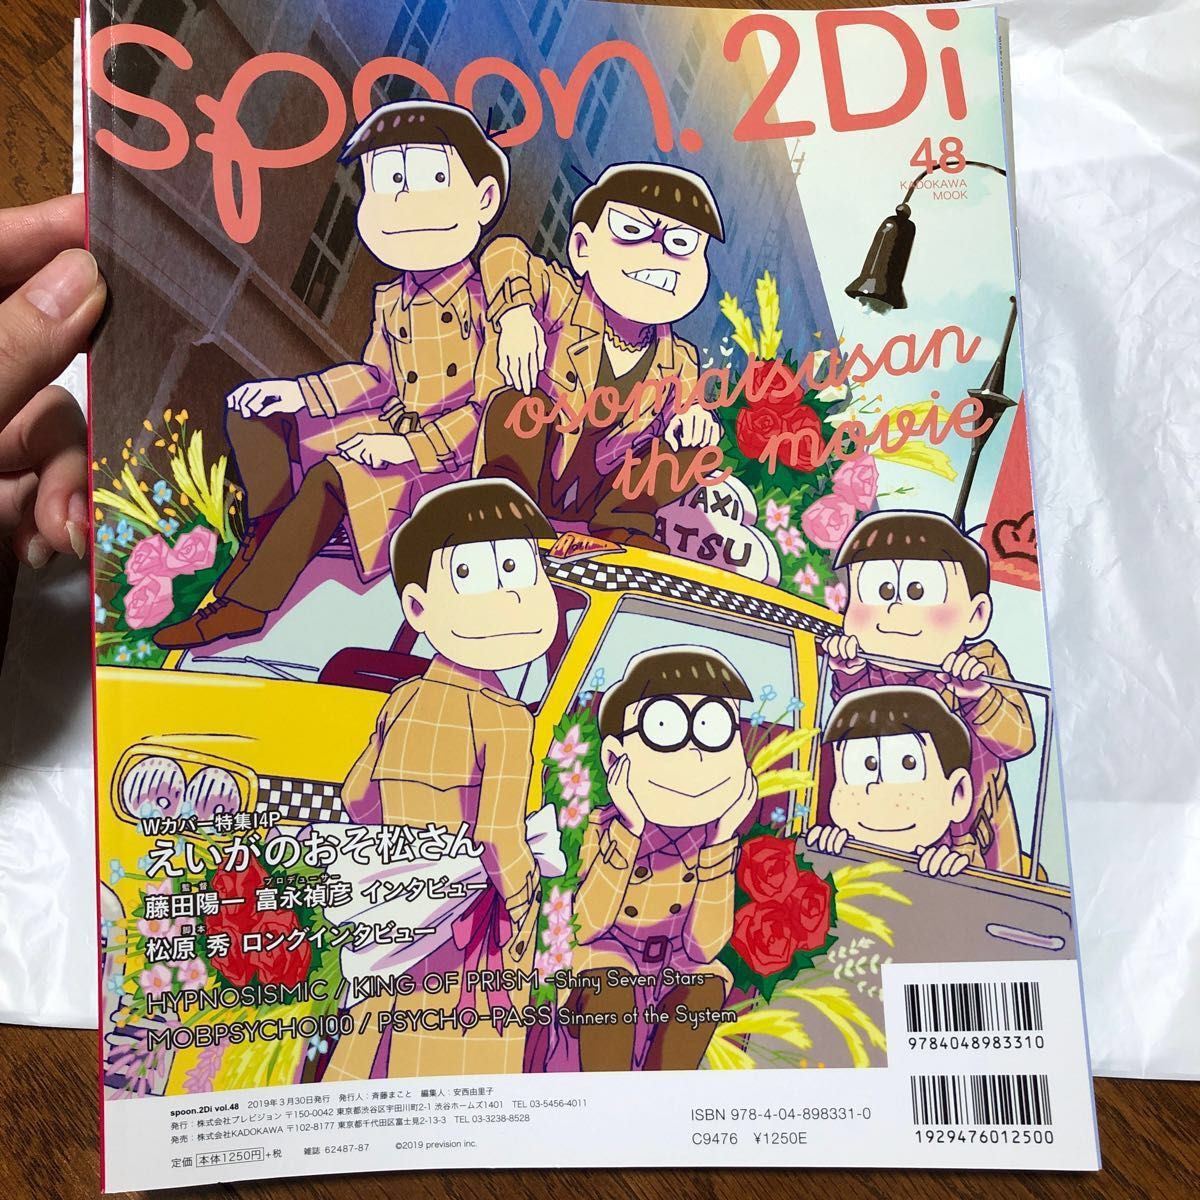 spoon.2Di vol.48 (書籍) [KADOKAWA]